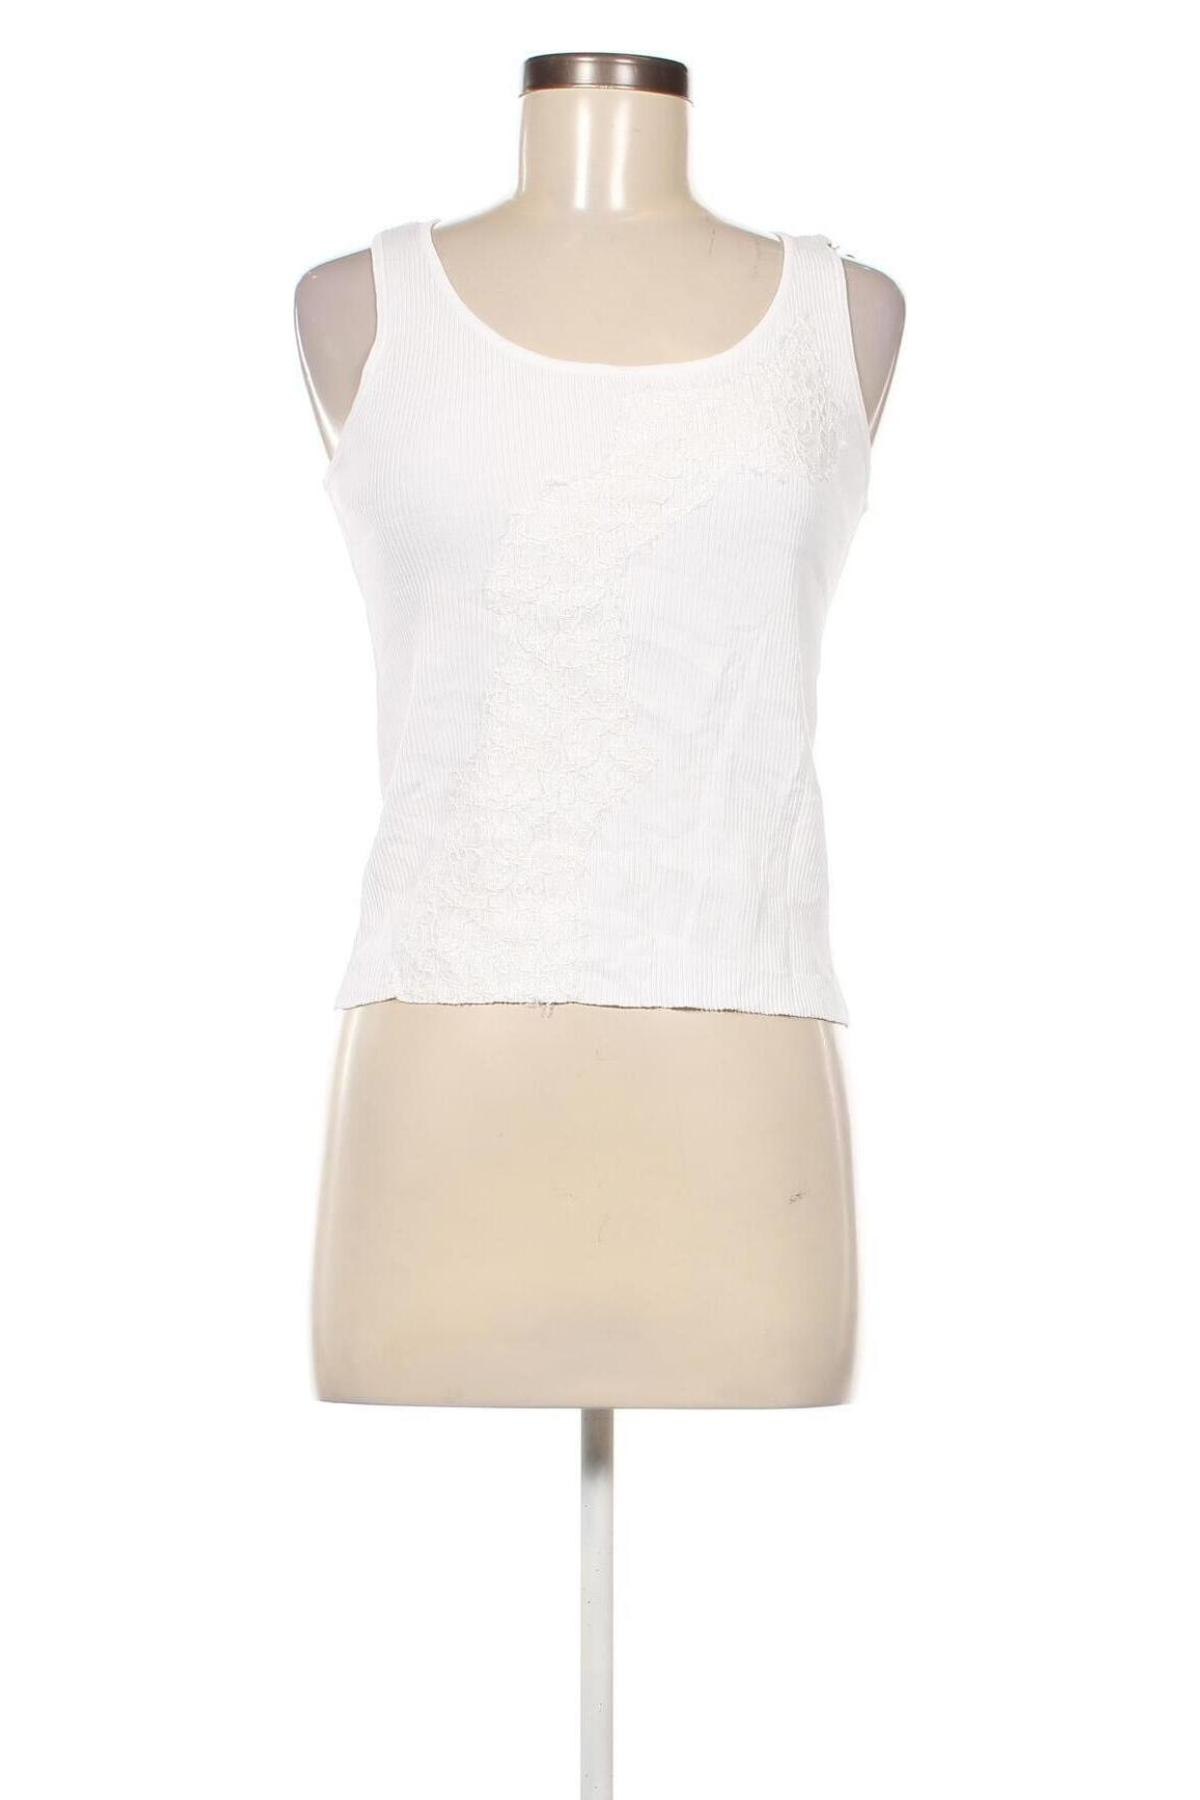 Γυναικείο αμάνικο μπλουζάκι Taifun, Μέγεθος M, Χρώμα Λευκό, Τιμή 7,35 €